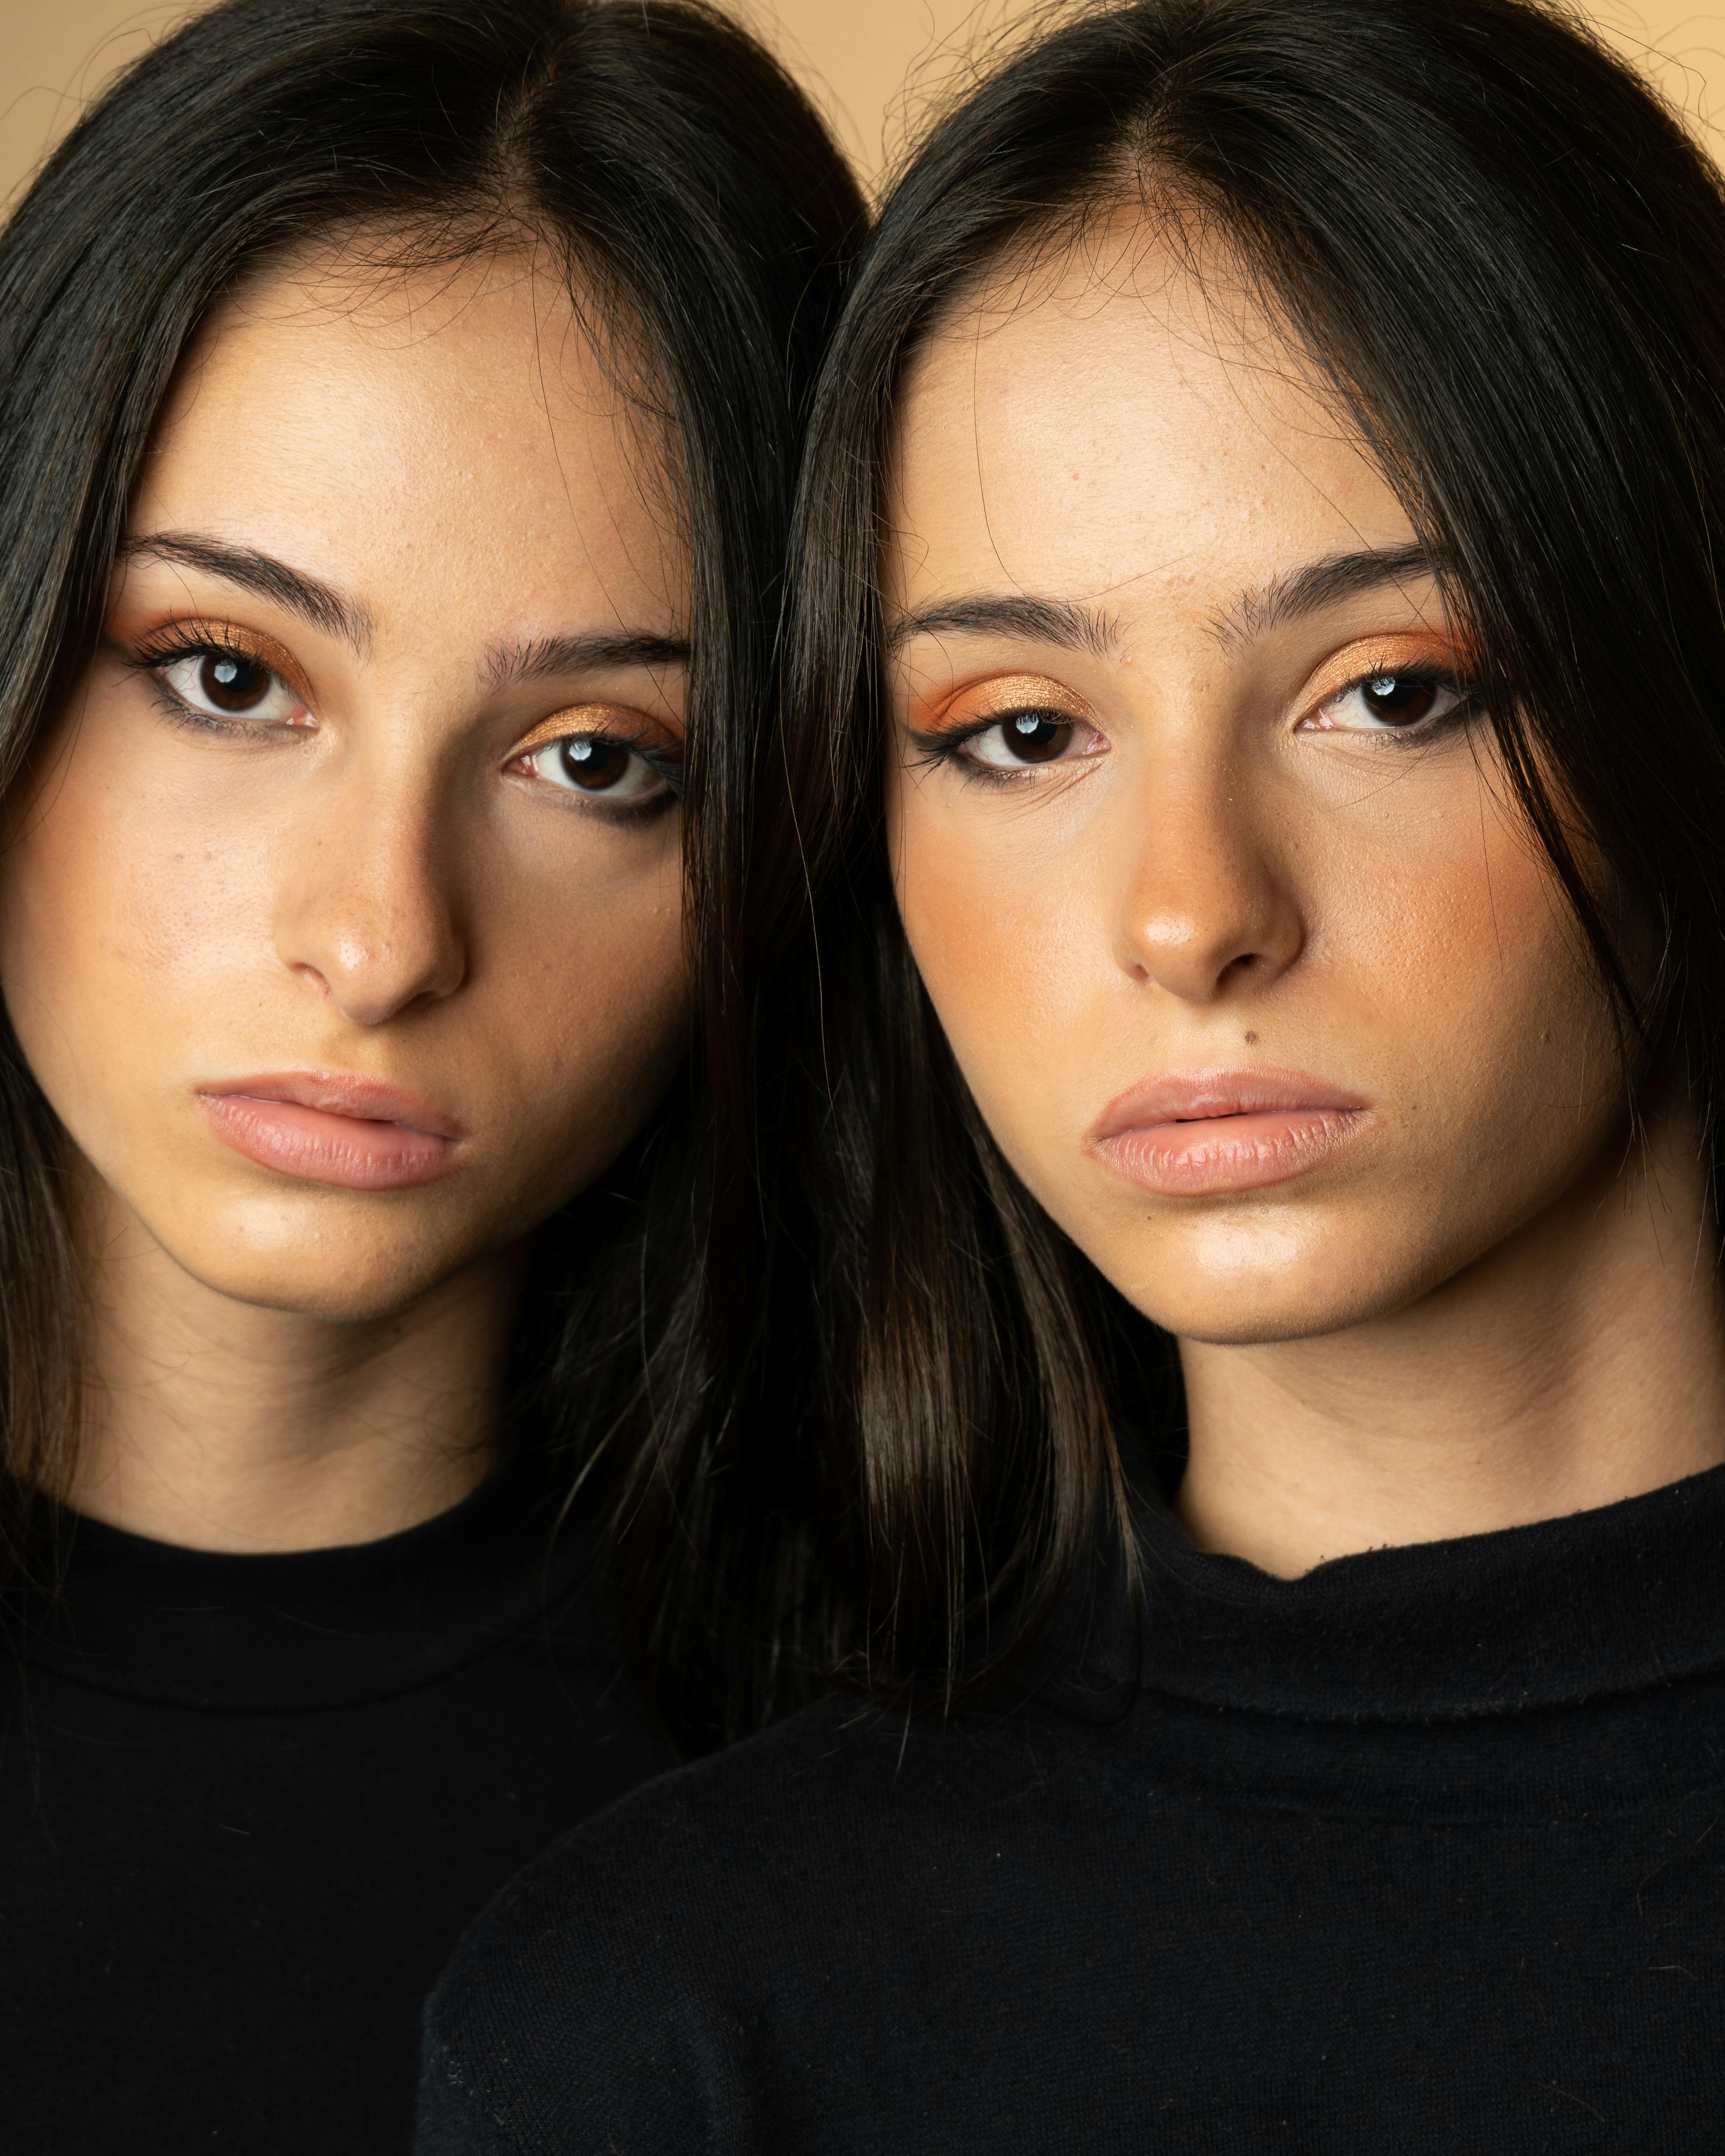 Twin sister portrait | Source: Pexels